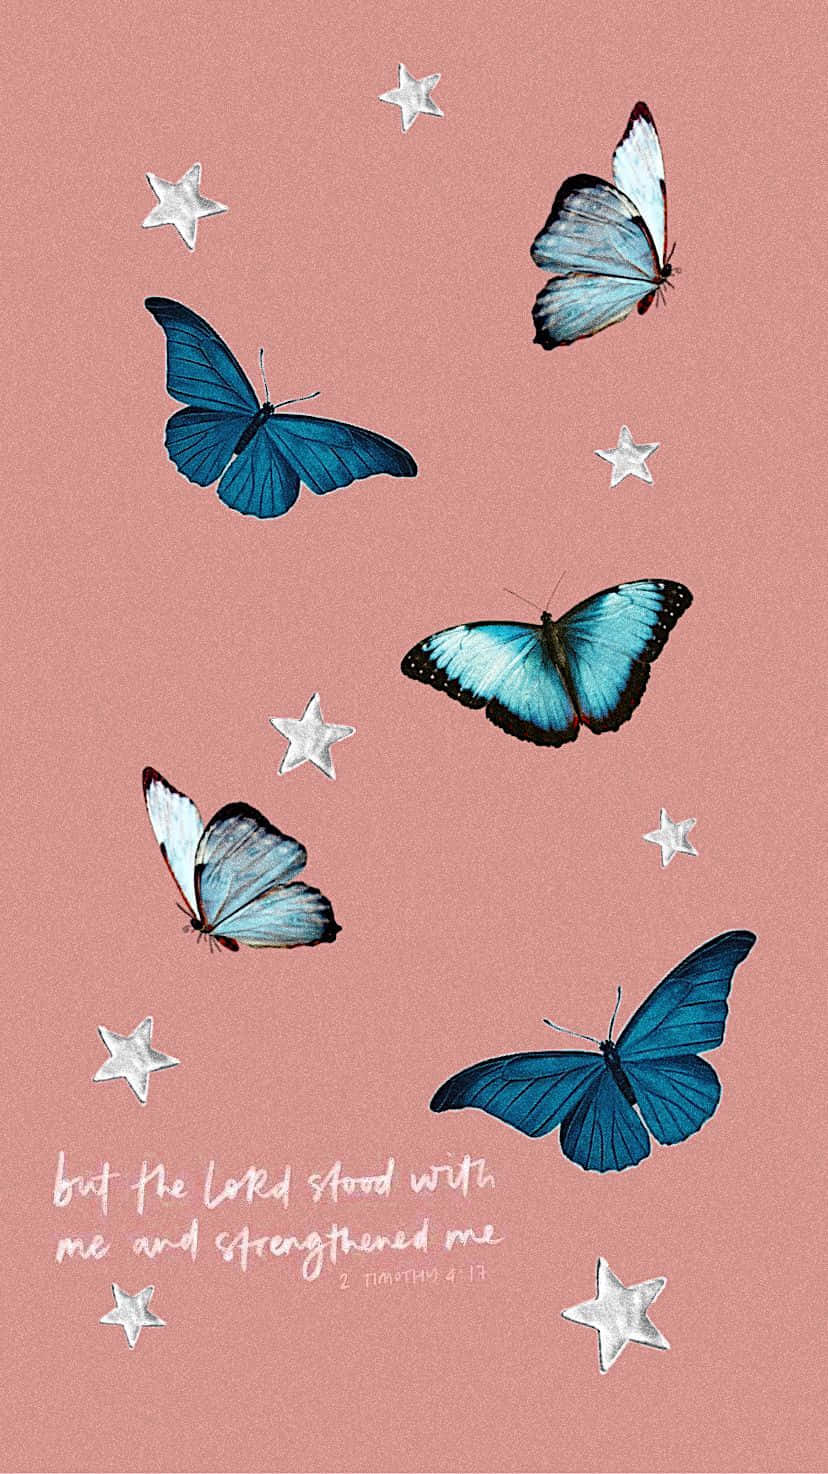 Einschöner Blauer Schmetterling Sticht Auf Einem Lila Hintergrund Mit Verlauf Hervor.